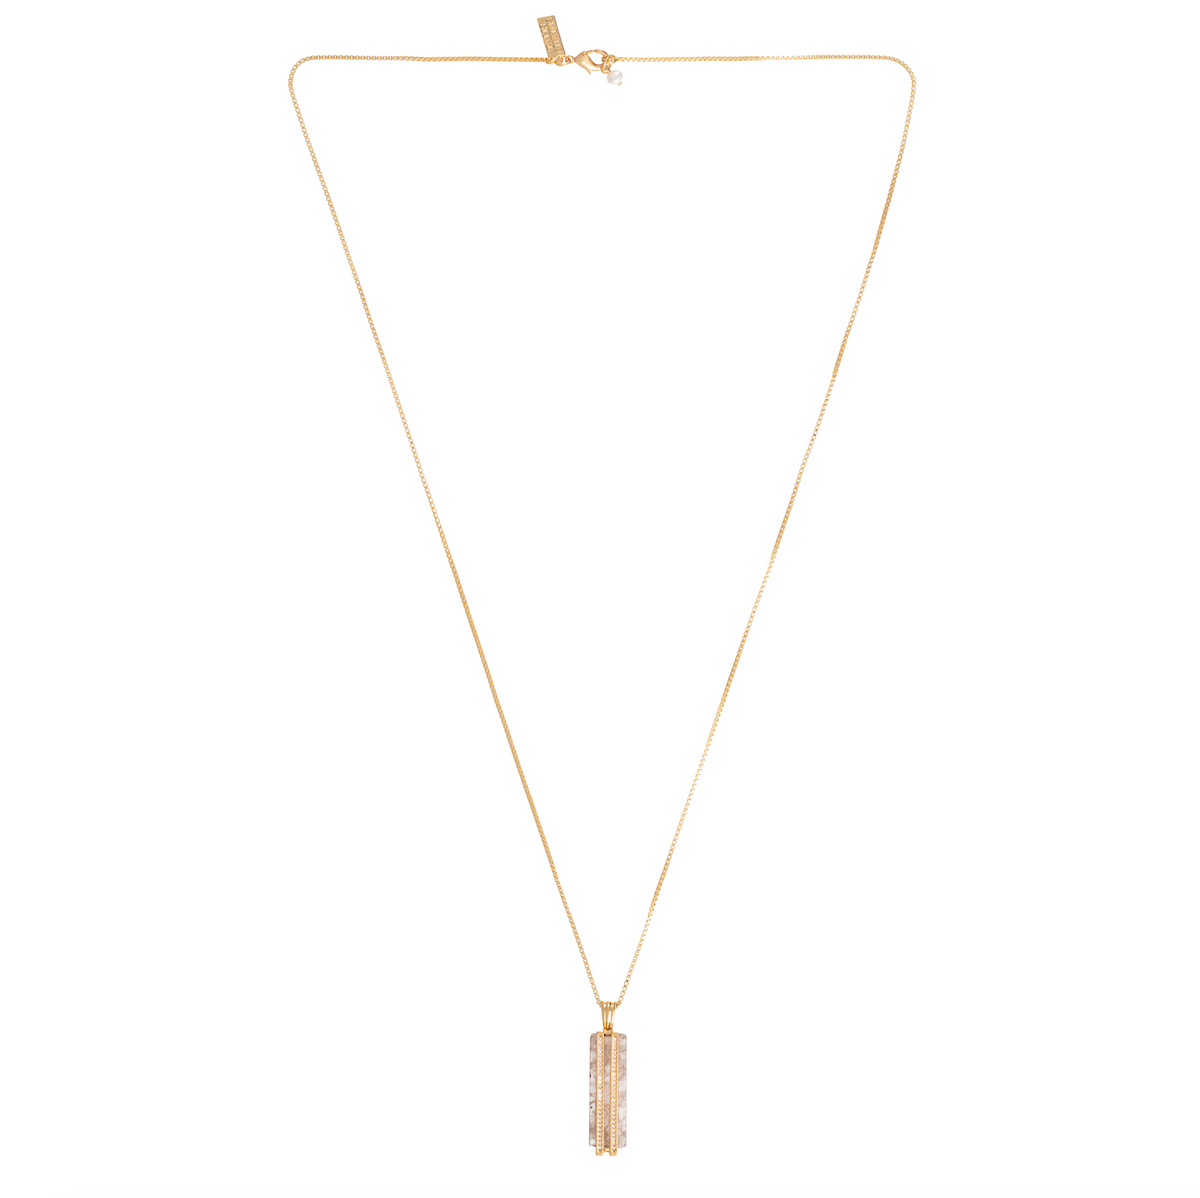 quartz long pendant gold chain necklace with diamante detailing